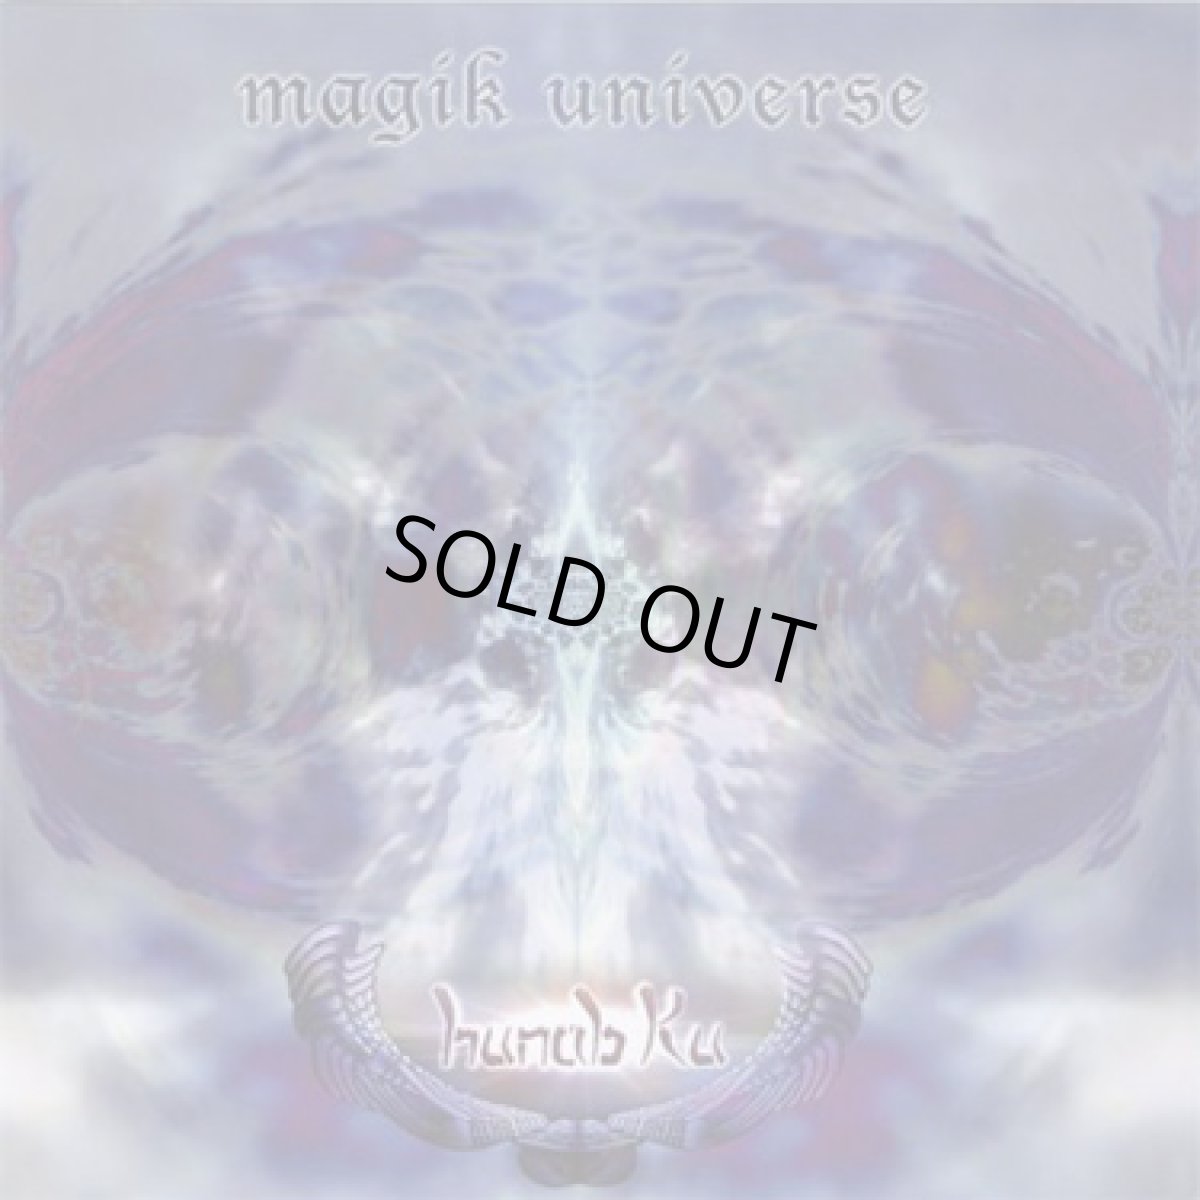 画像1: CD「HUNAB KU / Magik Universe Remastered」【ゴアトランス】 (1)